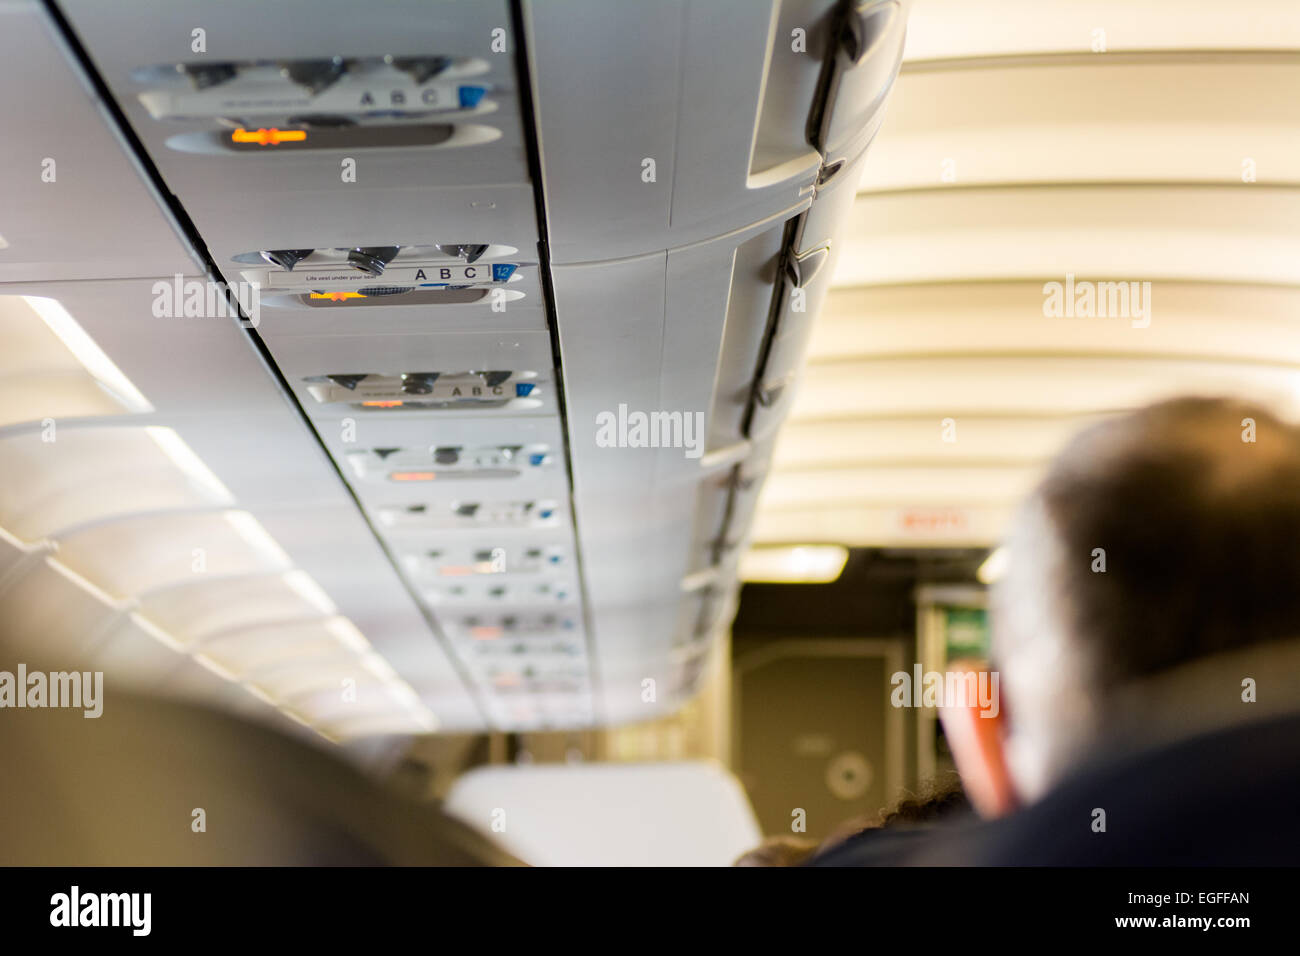 Sovraccarico di pannelli di comando nella cabina del piano commerciale di volo della compagnia aerea Foto Stock